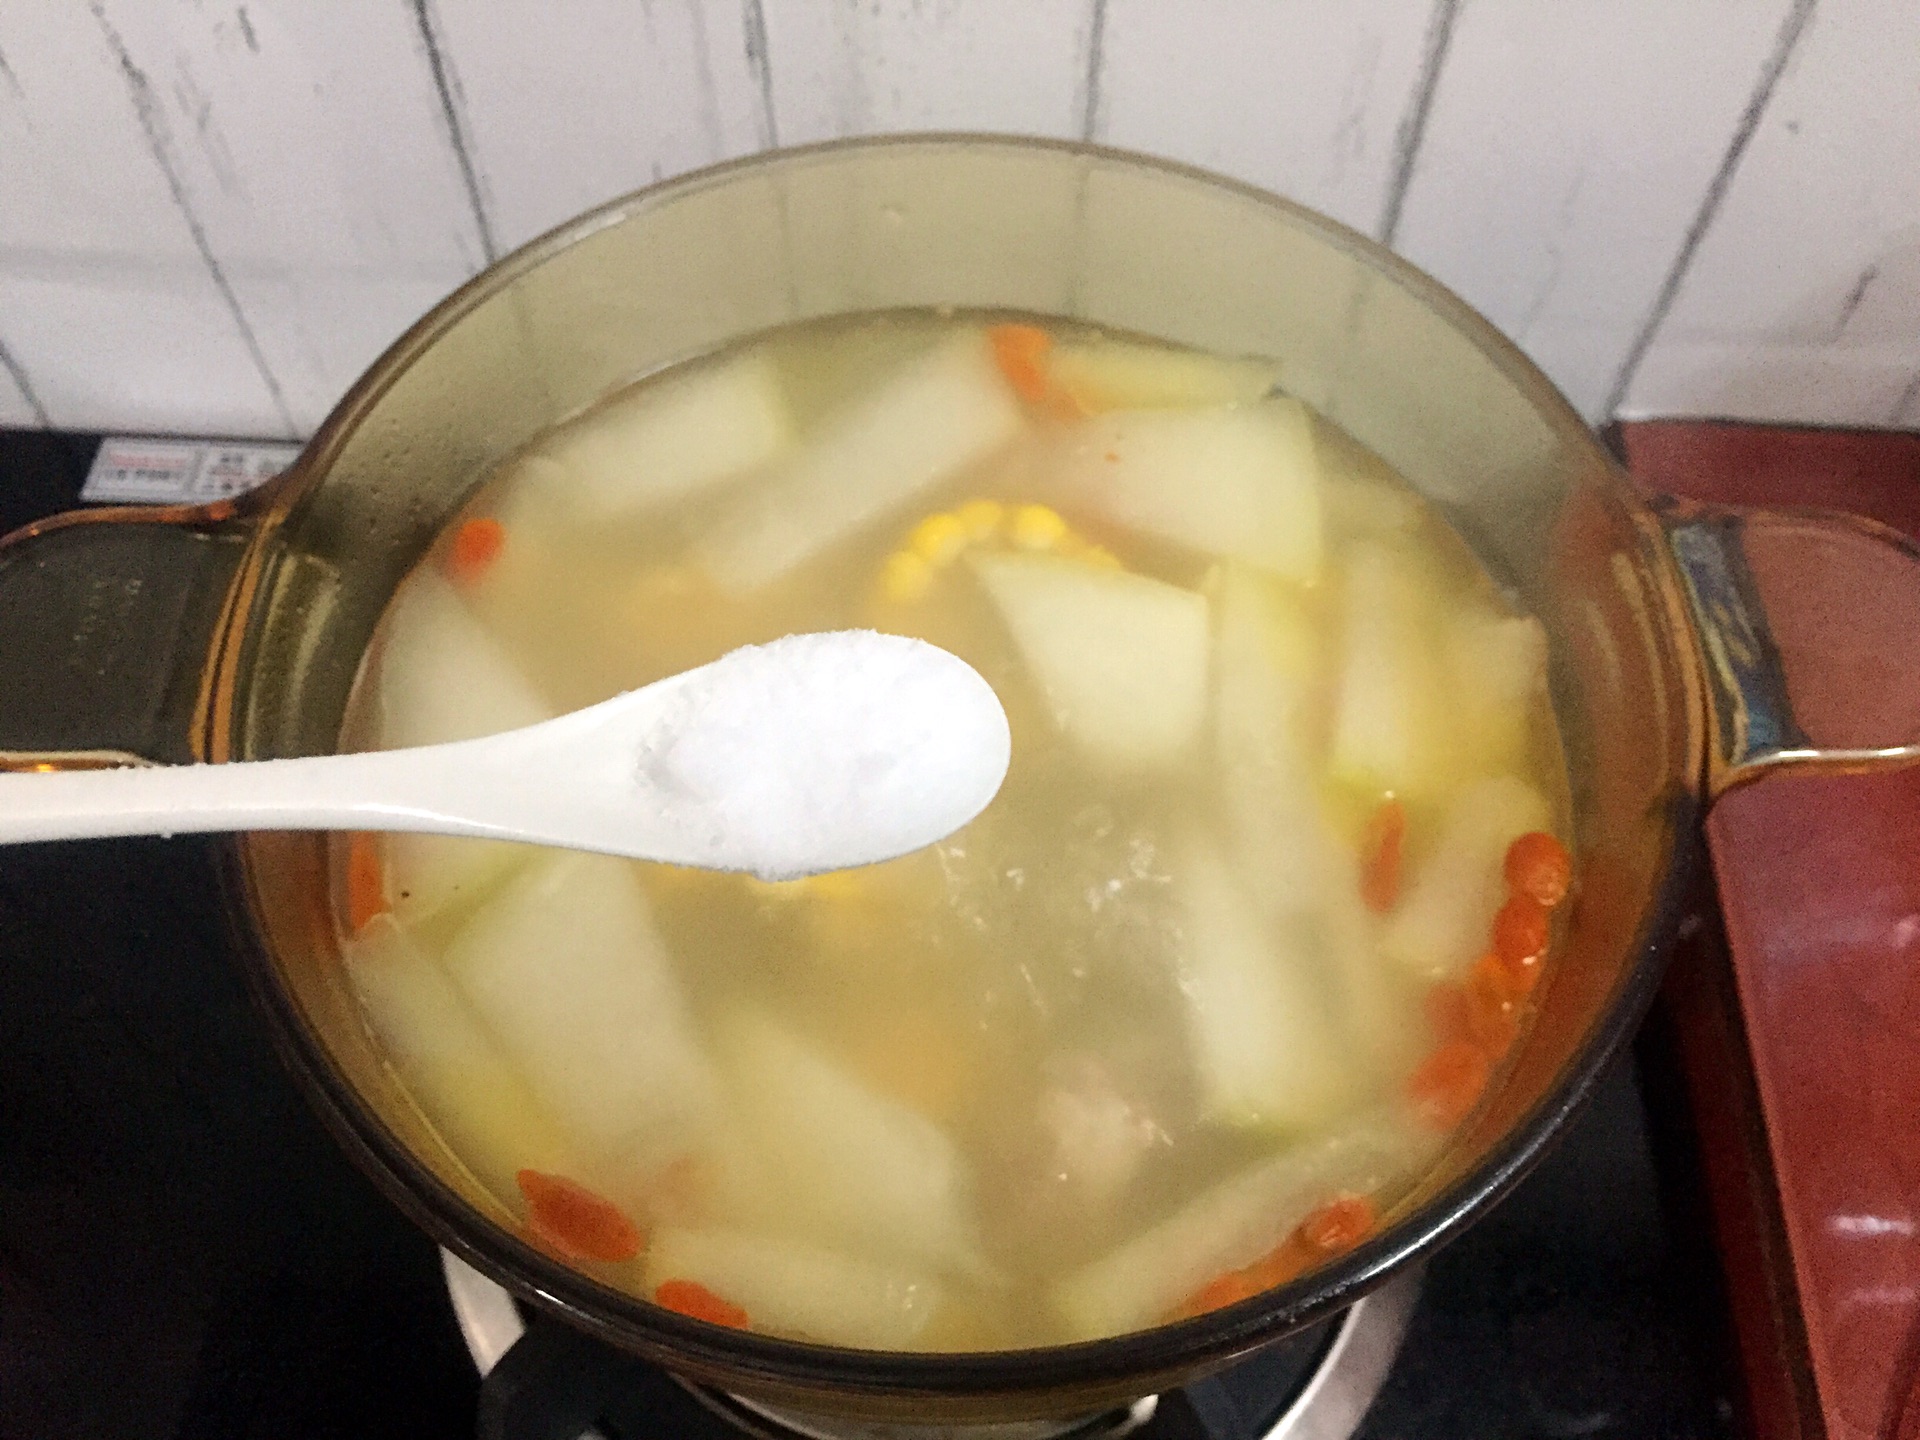 玉米山药汤,玉米山药汤的家常做法 - 美食杰玉米山药汤做法大全